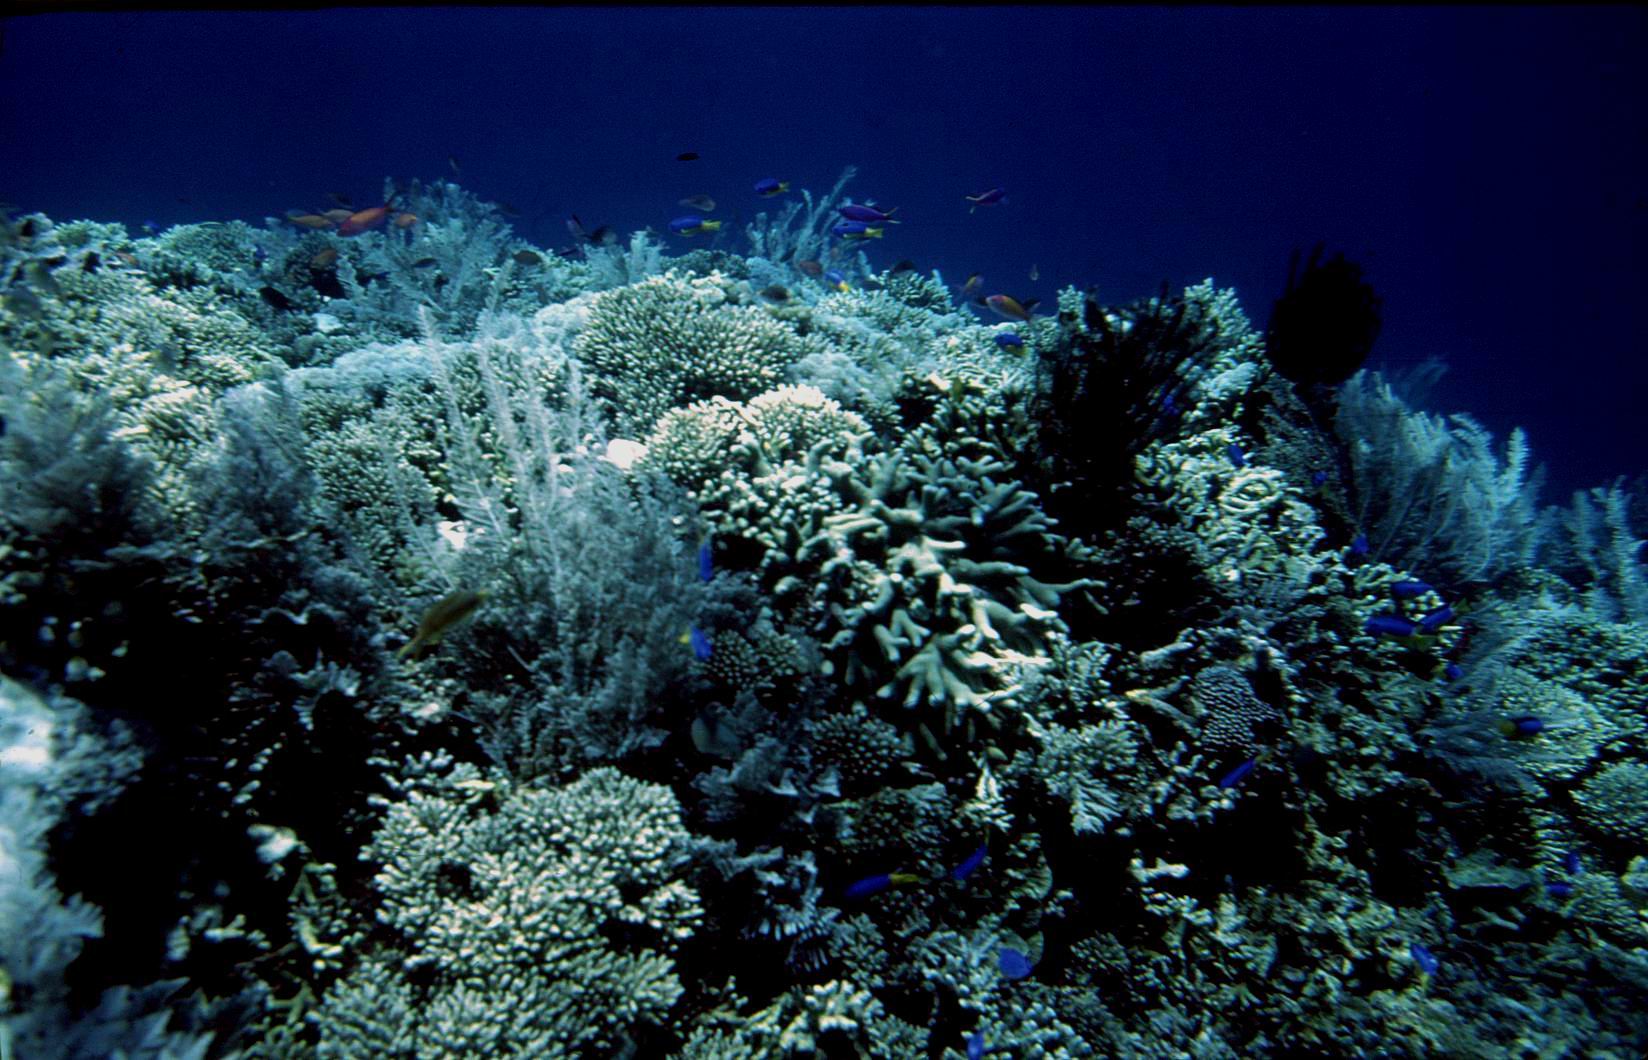 Aspect din zona coralieră din preajma Insulei Bunaken (fotografie realizată de membrii echipei)